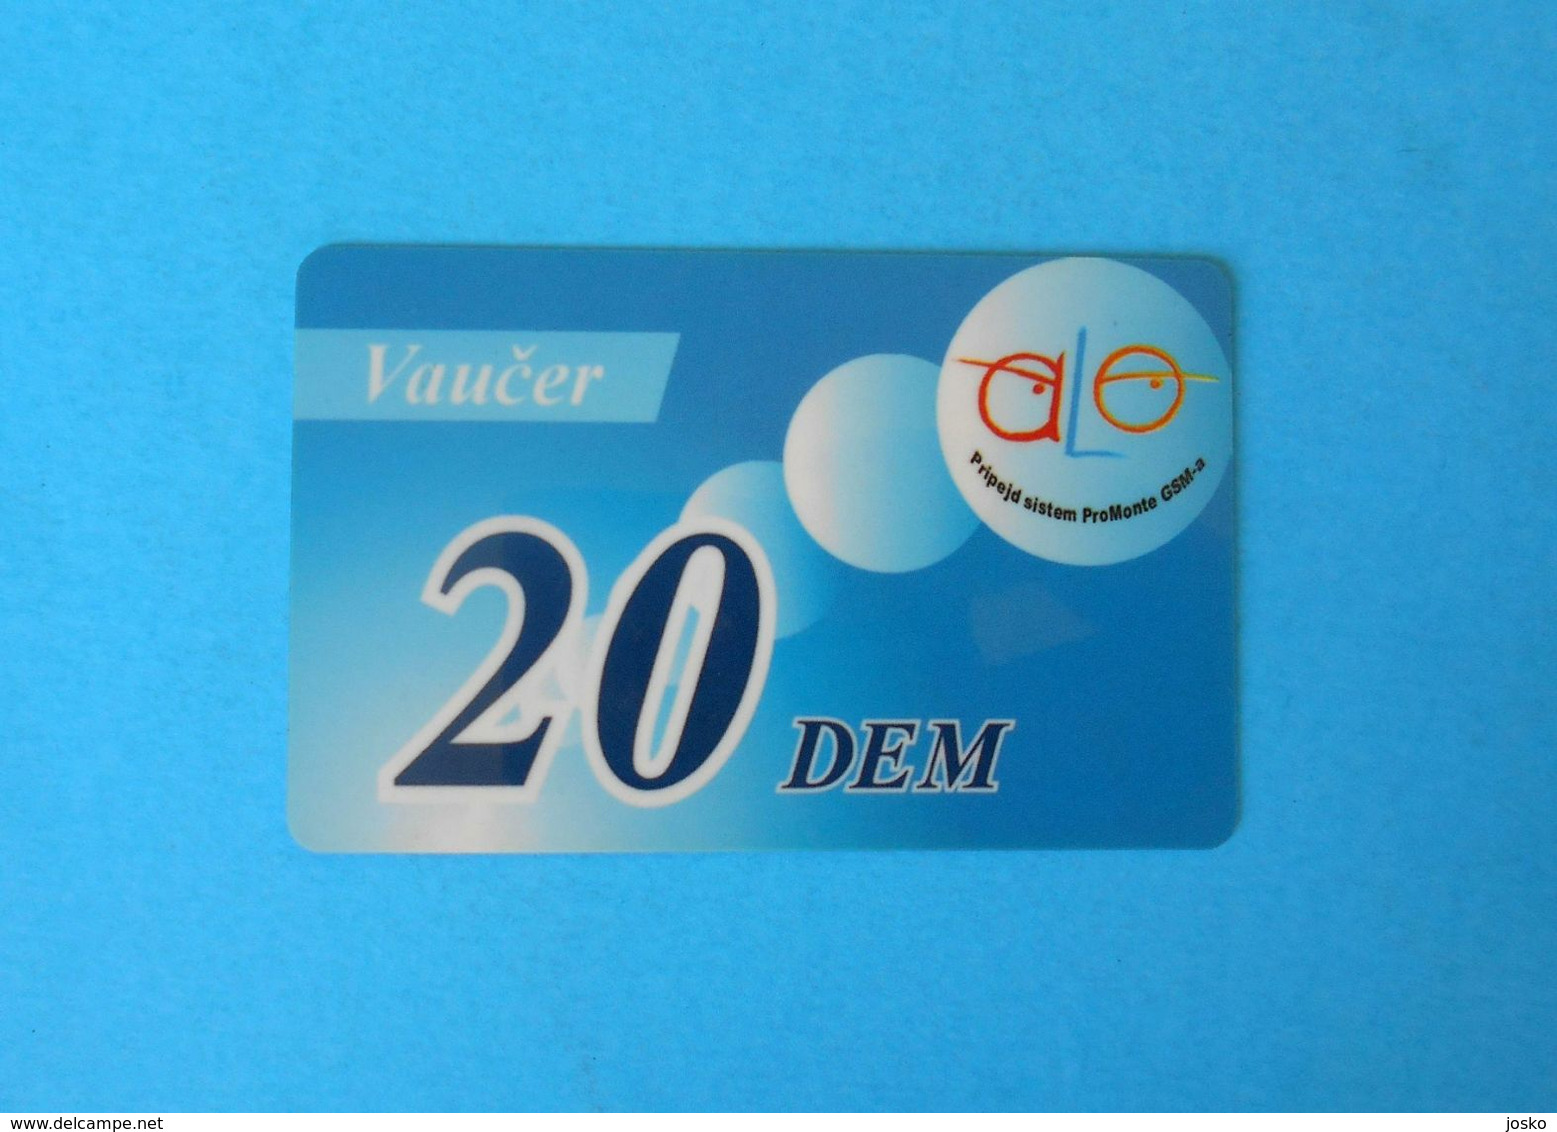 20 DEM ... Montenegro Very Old Issue Prepaid GSM Card * Prepaye Carte Recharge - Value In Old Deutschland Marks Vaucer - Montenegro